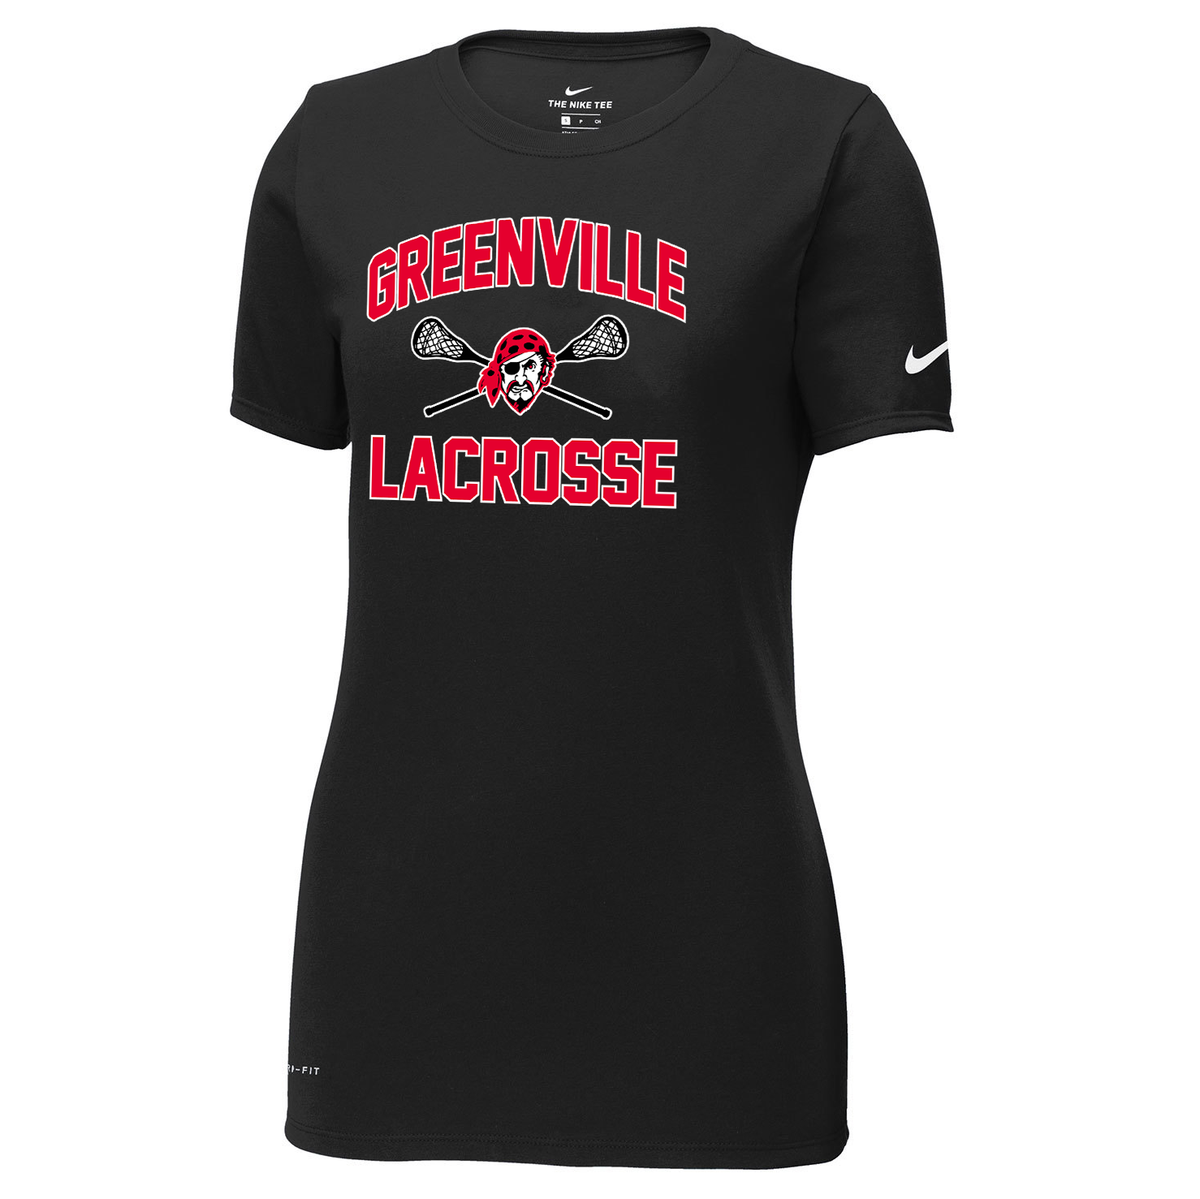 Greenville Girls Lacrosse Nike Ladies Dri-FIT Tee